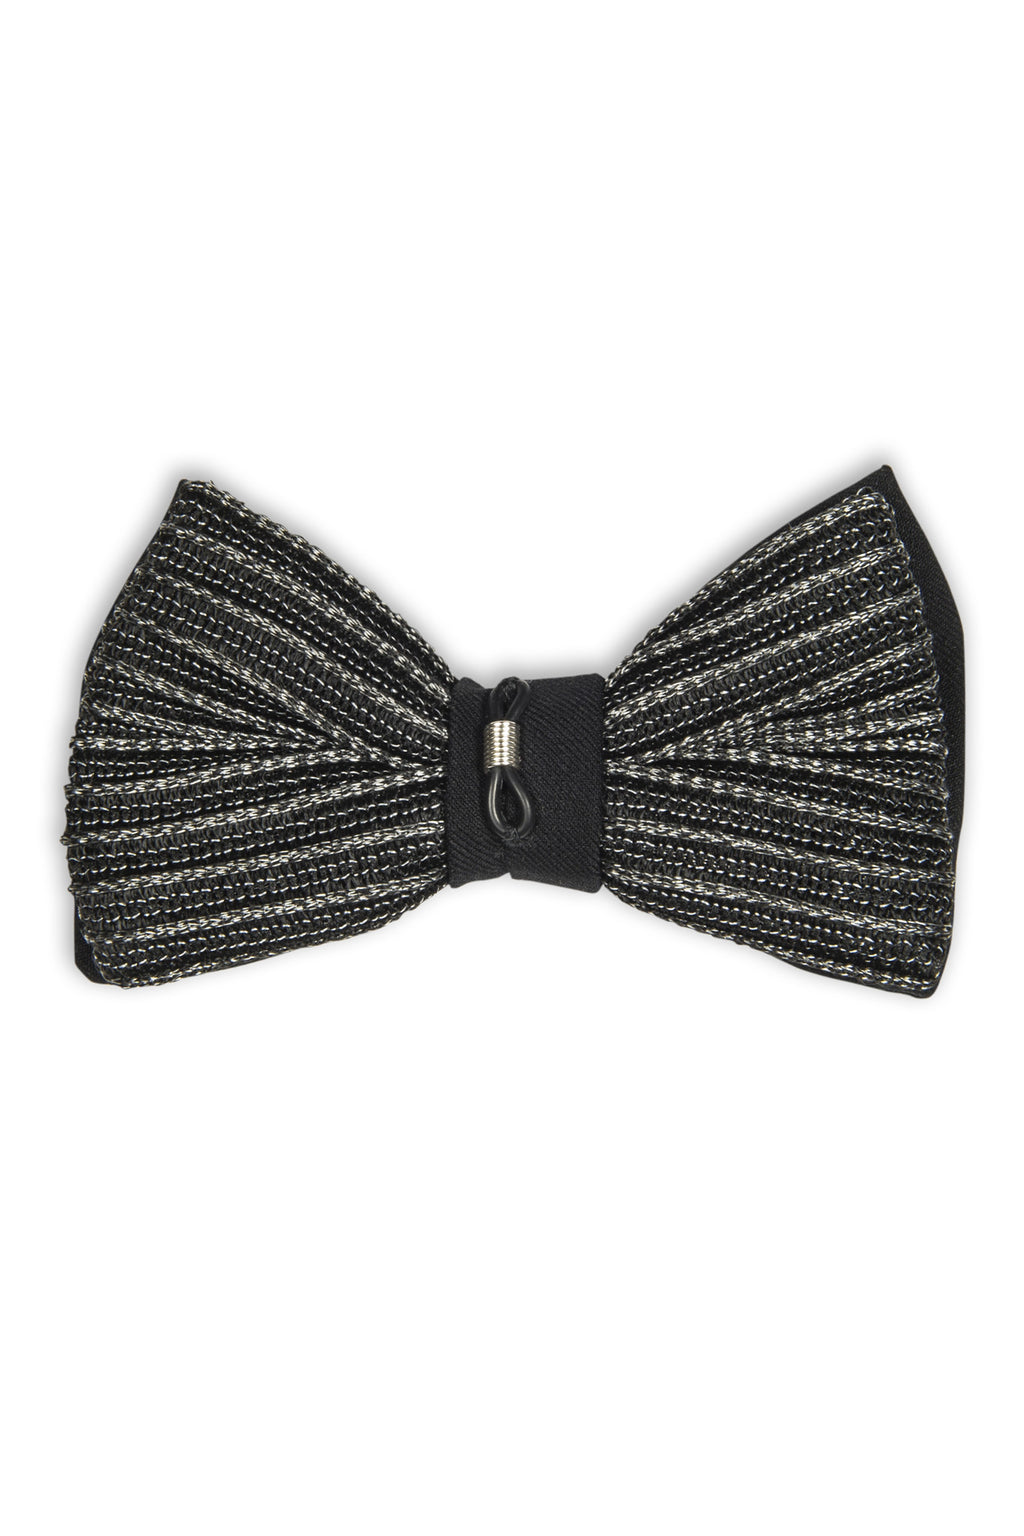 Noeud papillon avec attache métal sur le noeud - Italian fabric bow tie with attachment  